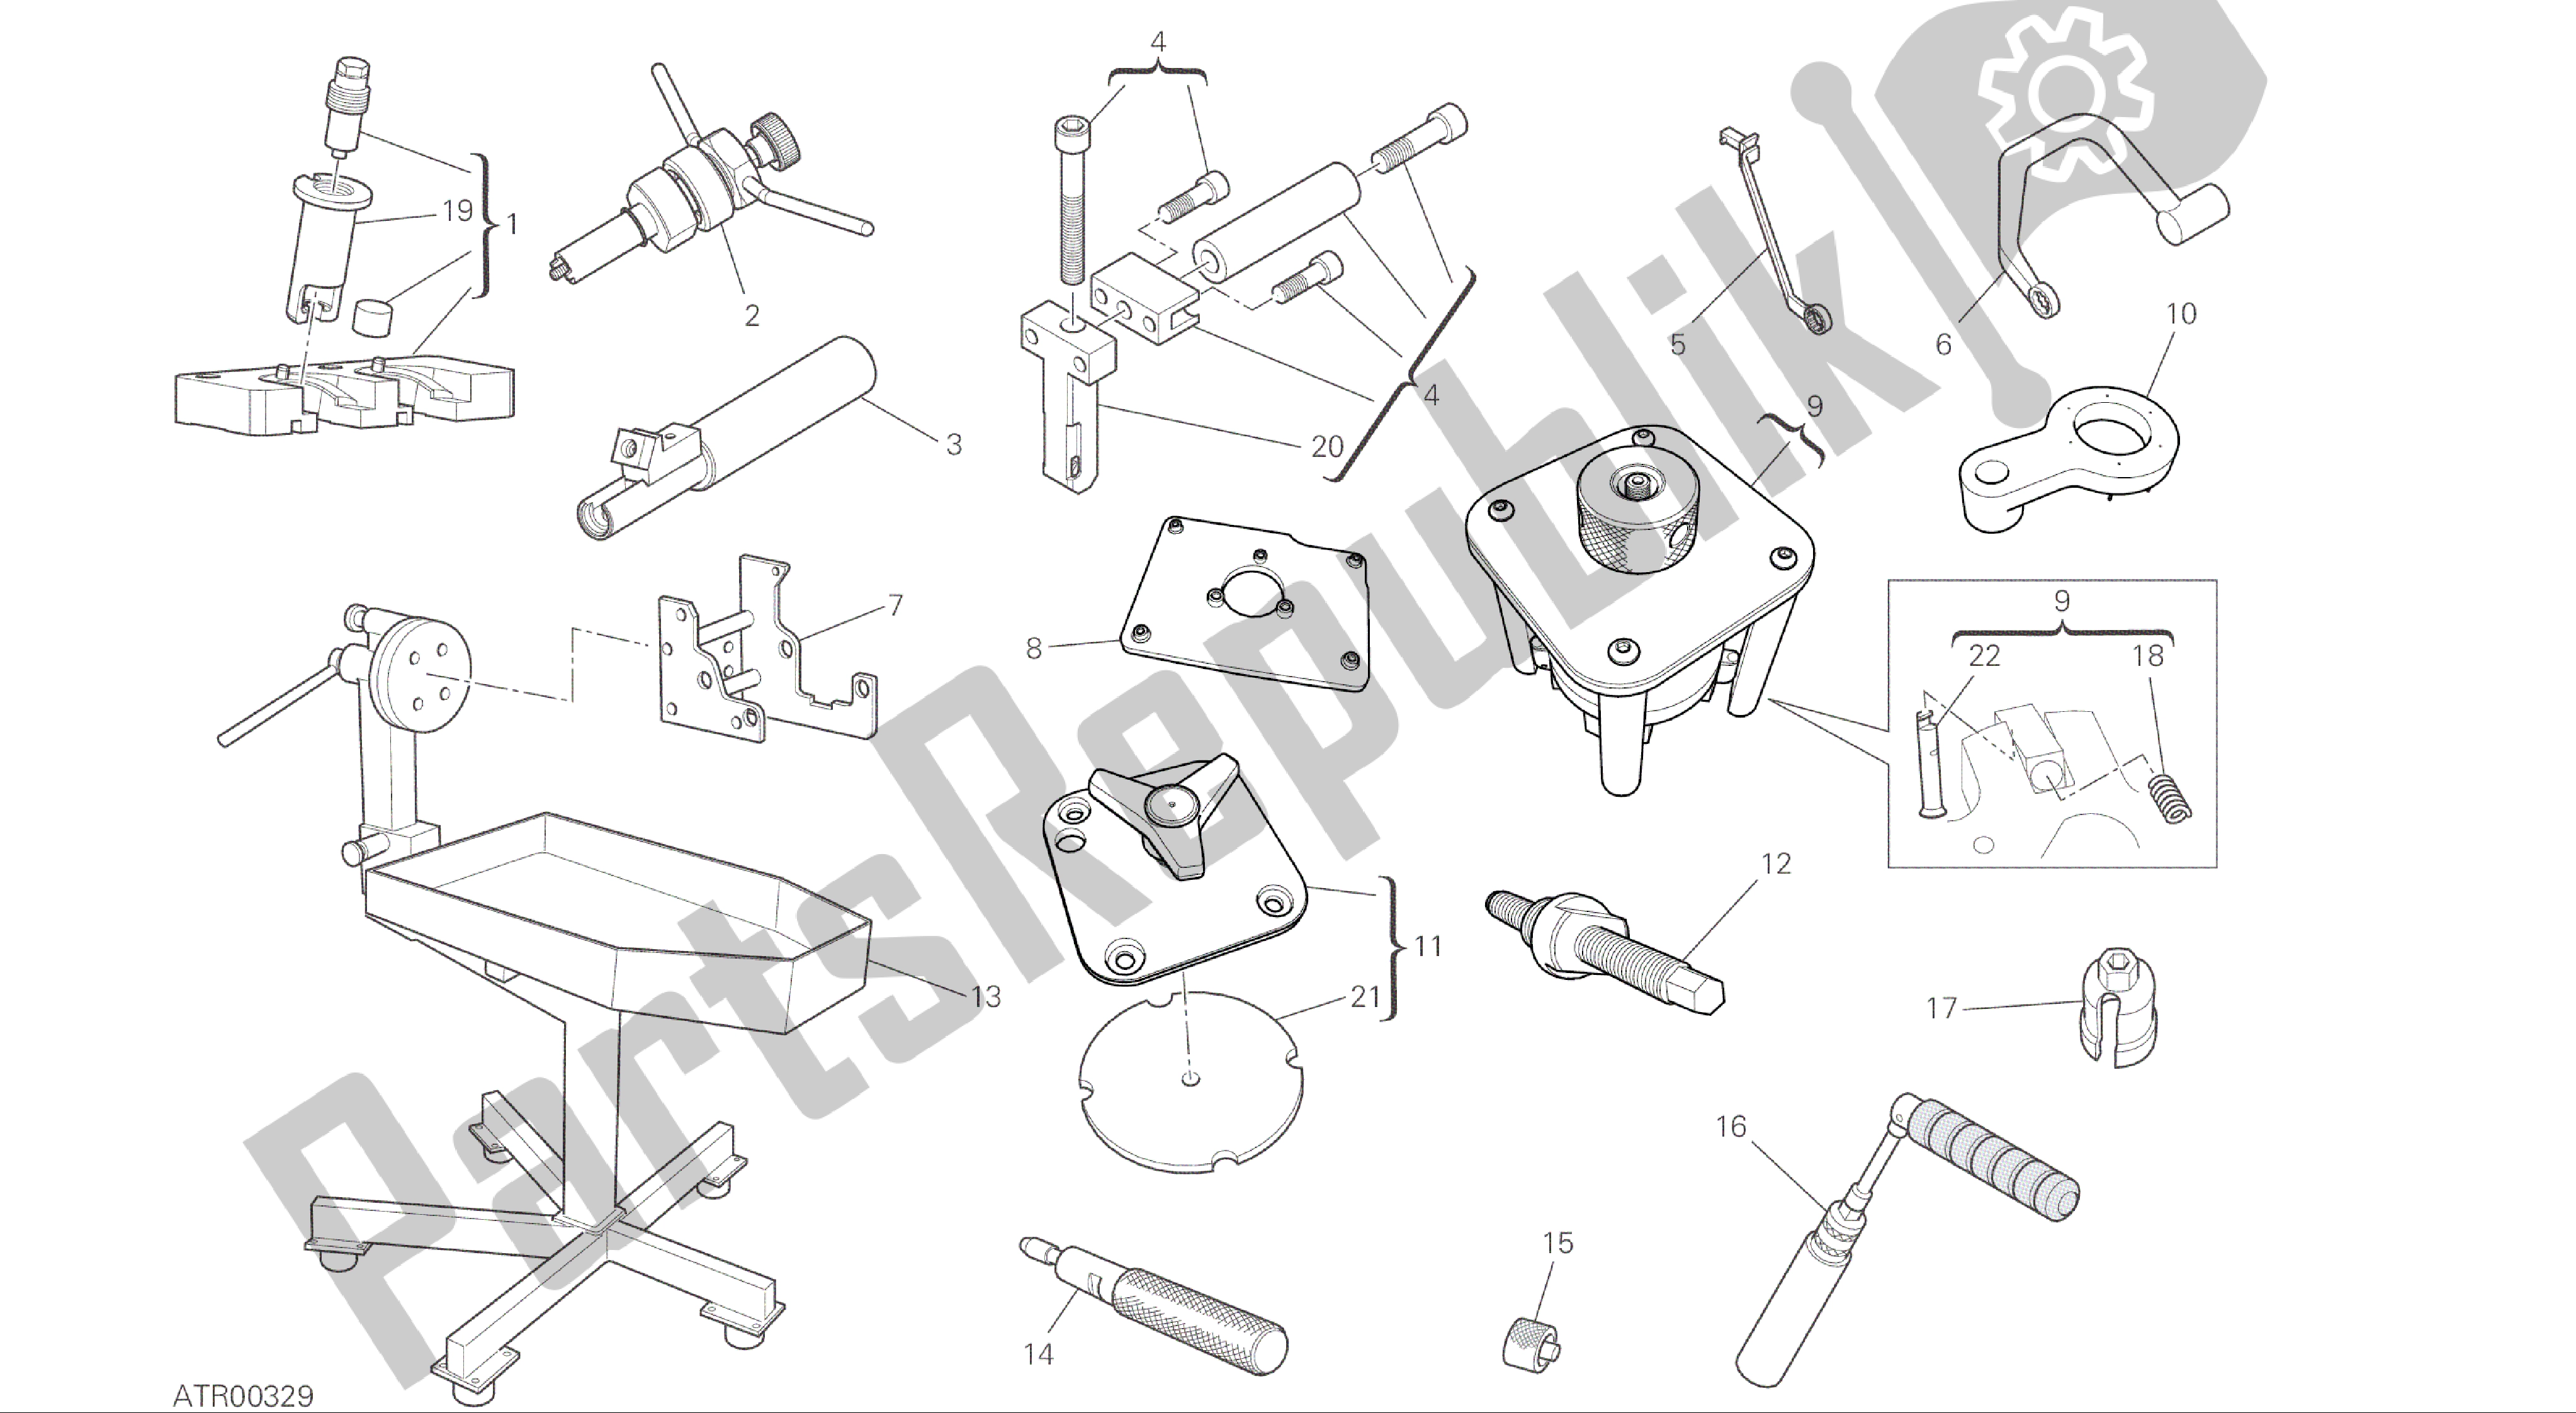 Alle onderdelen voor de Tekening 01b - Werkplaats Service Tools [mod: 1299; Xst: Aus, Eur, Fra, Jap, Twn] Groepstools van de Ducati Panigale ABS 1299 2016